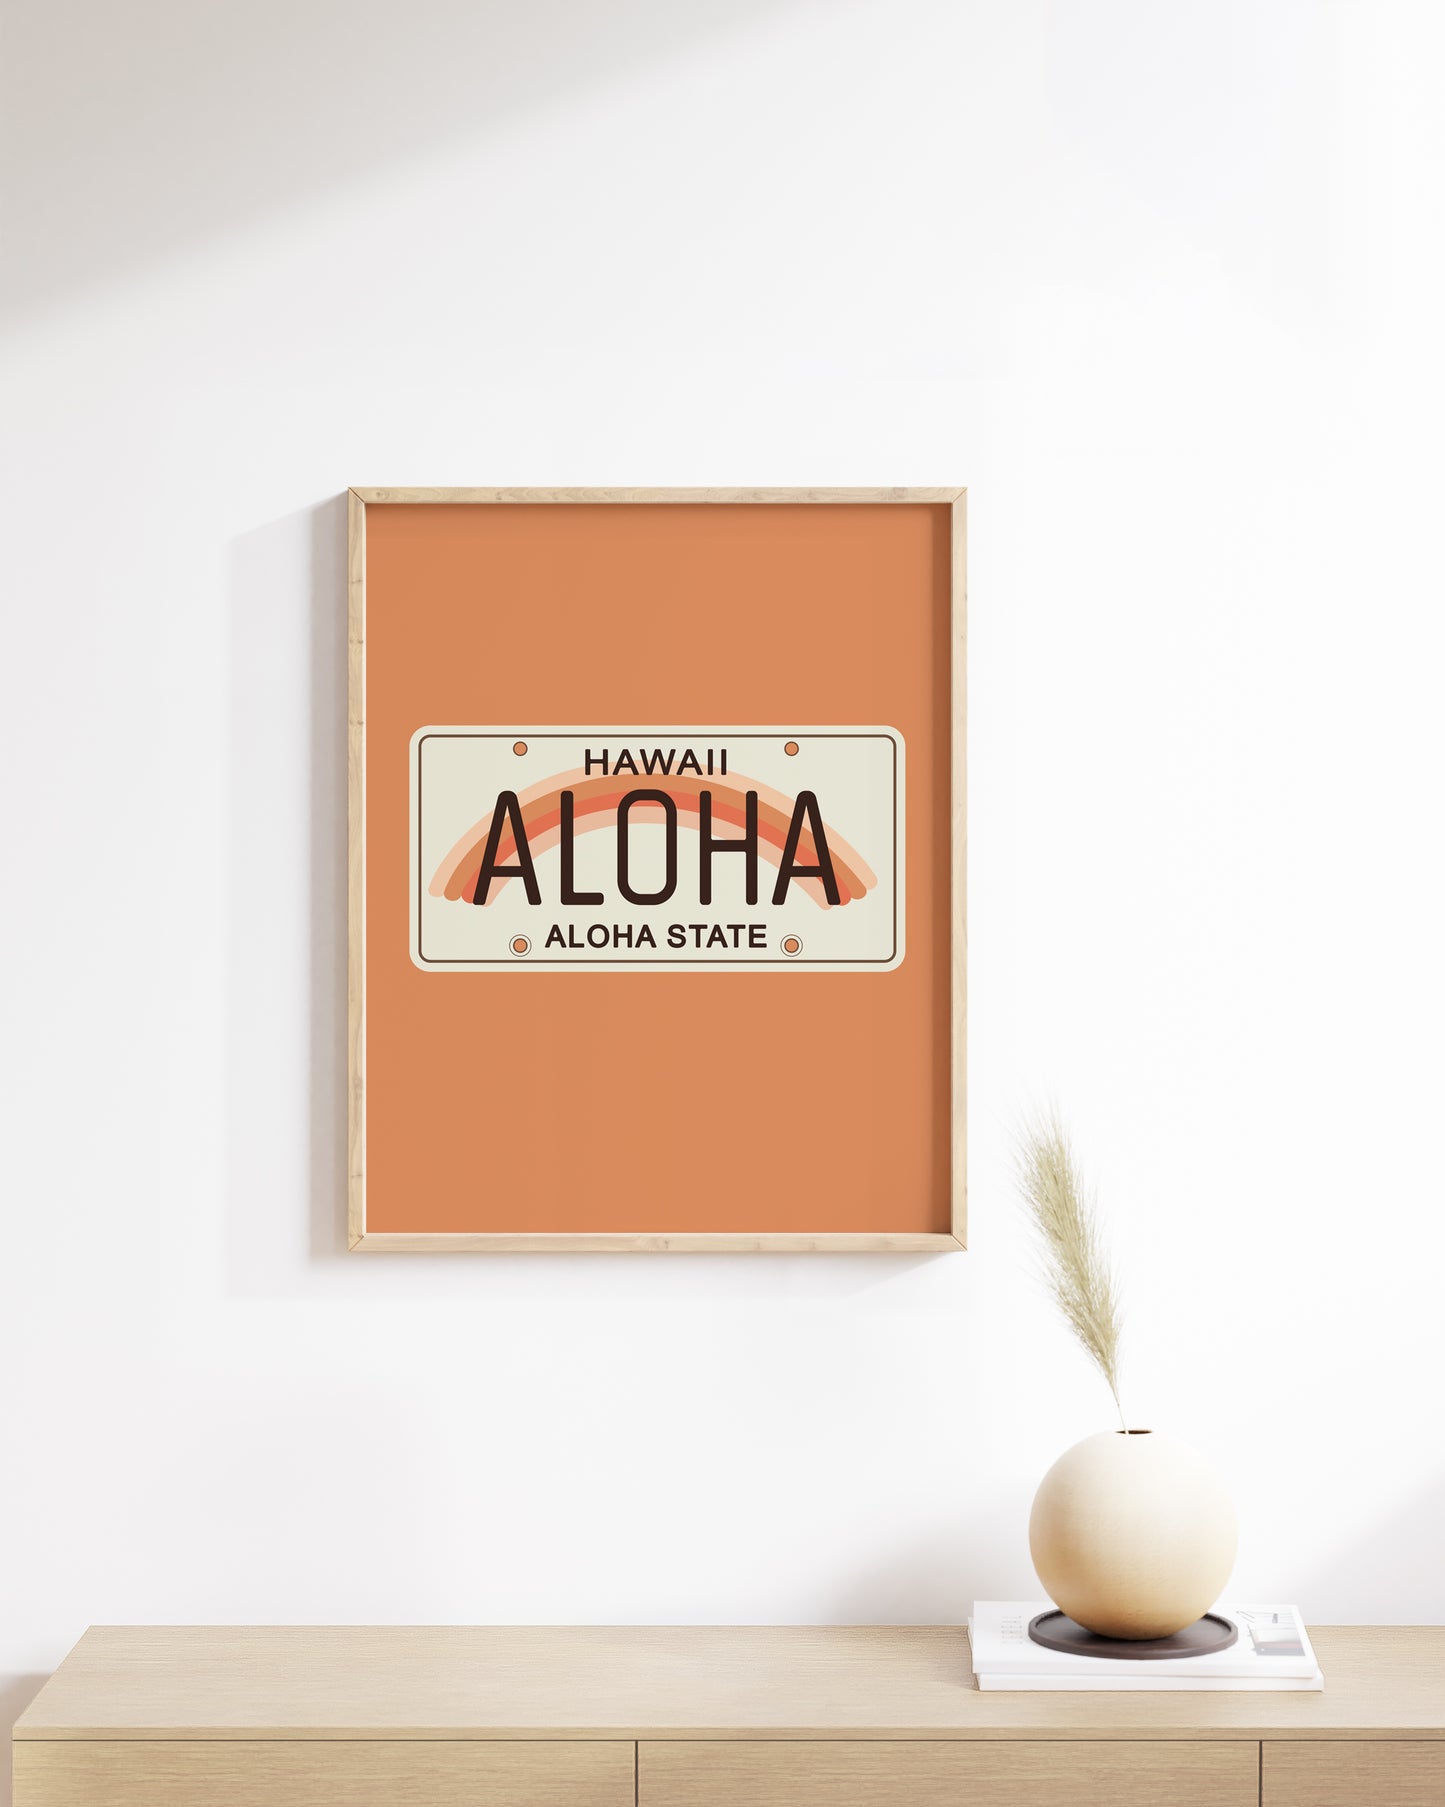 Aloha Plate